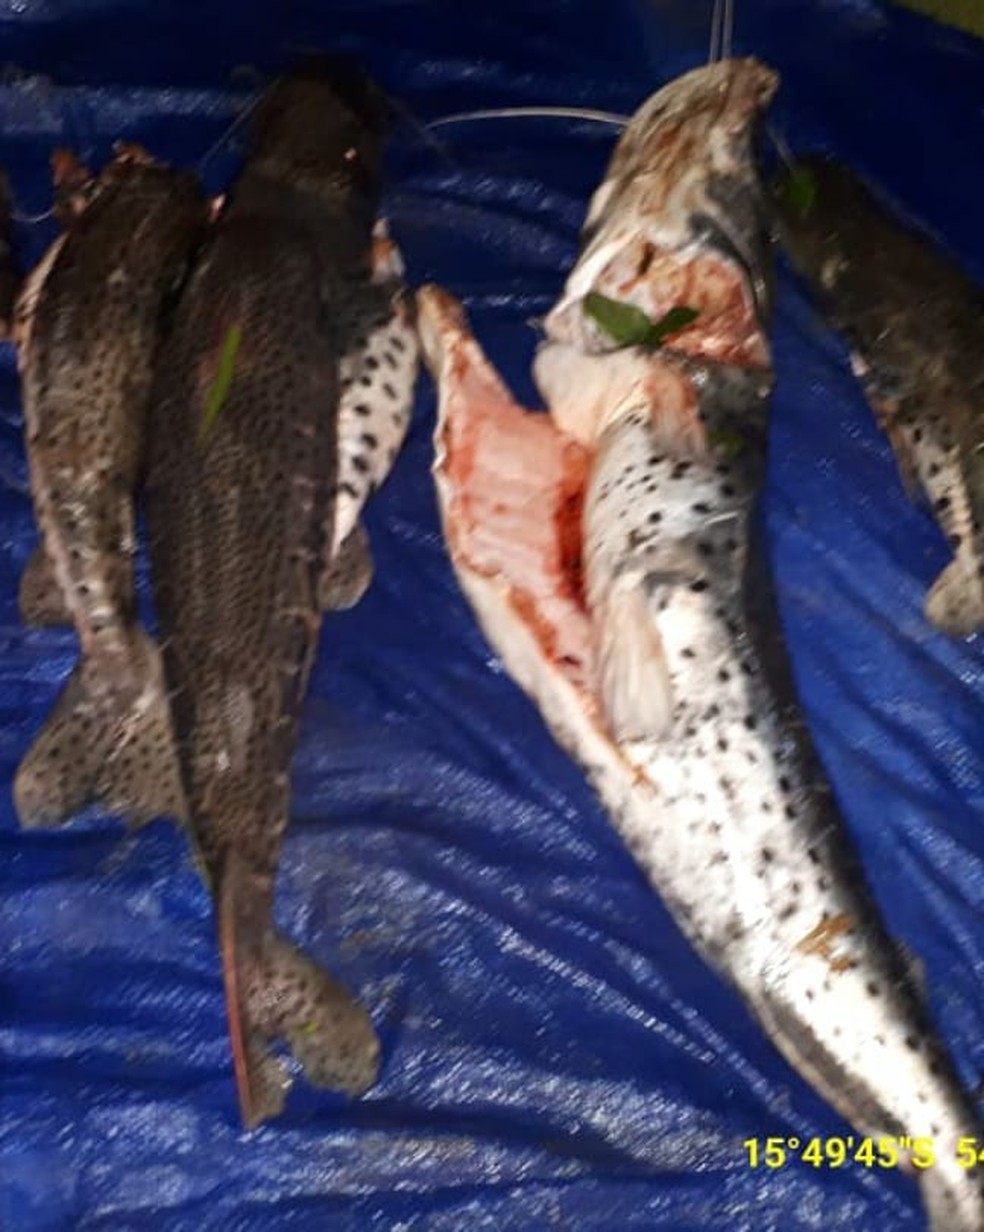 Três pessoas foram presas na noite dessa quinta-feira (13) com 100 kg de pescado irregular na MT-130, trevo de acesso à região de Jarudore, em Poxoréu — Foto: Batalhão Ambiental da Polícia Militar/Divulgação